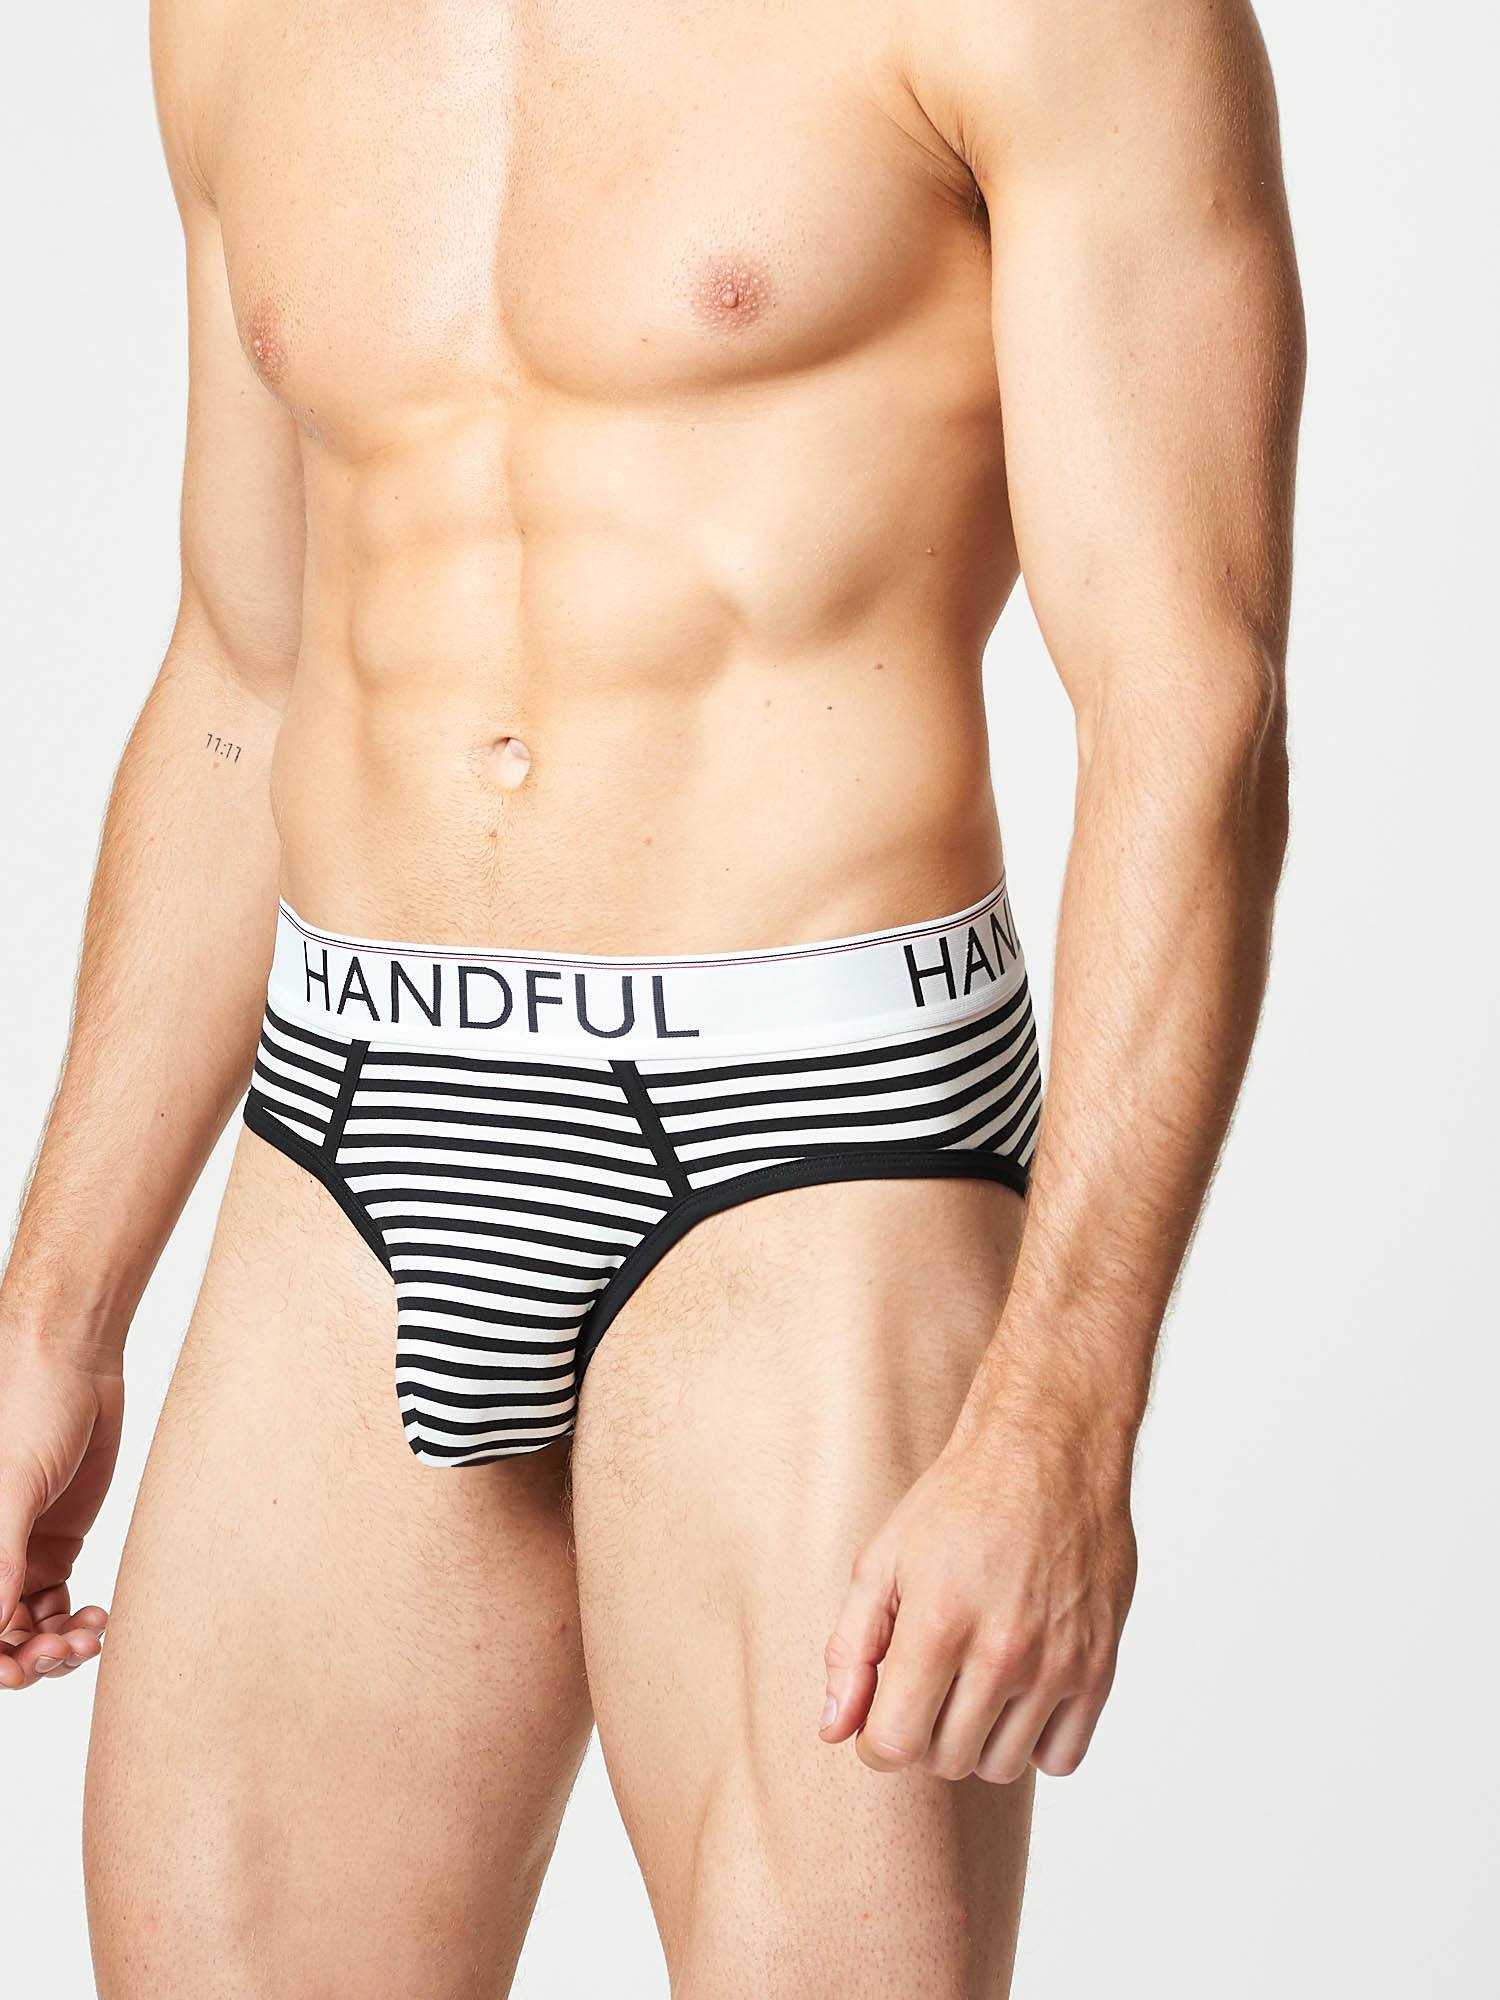 Handful  black and white Stripe cotton Air brief | Mens Underwear | Hand & Jones